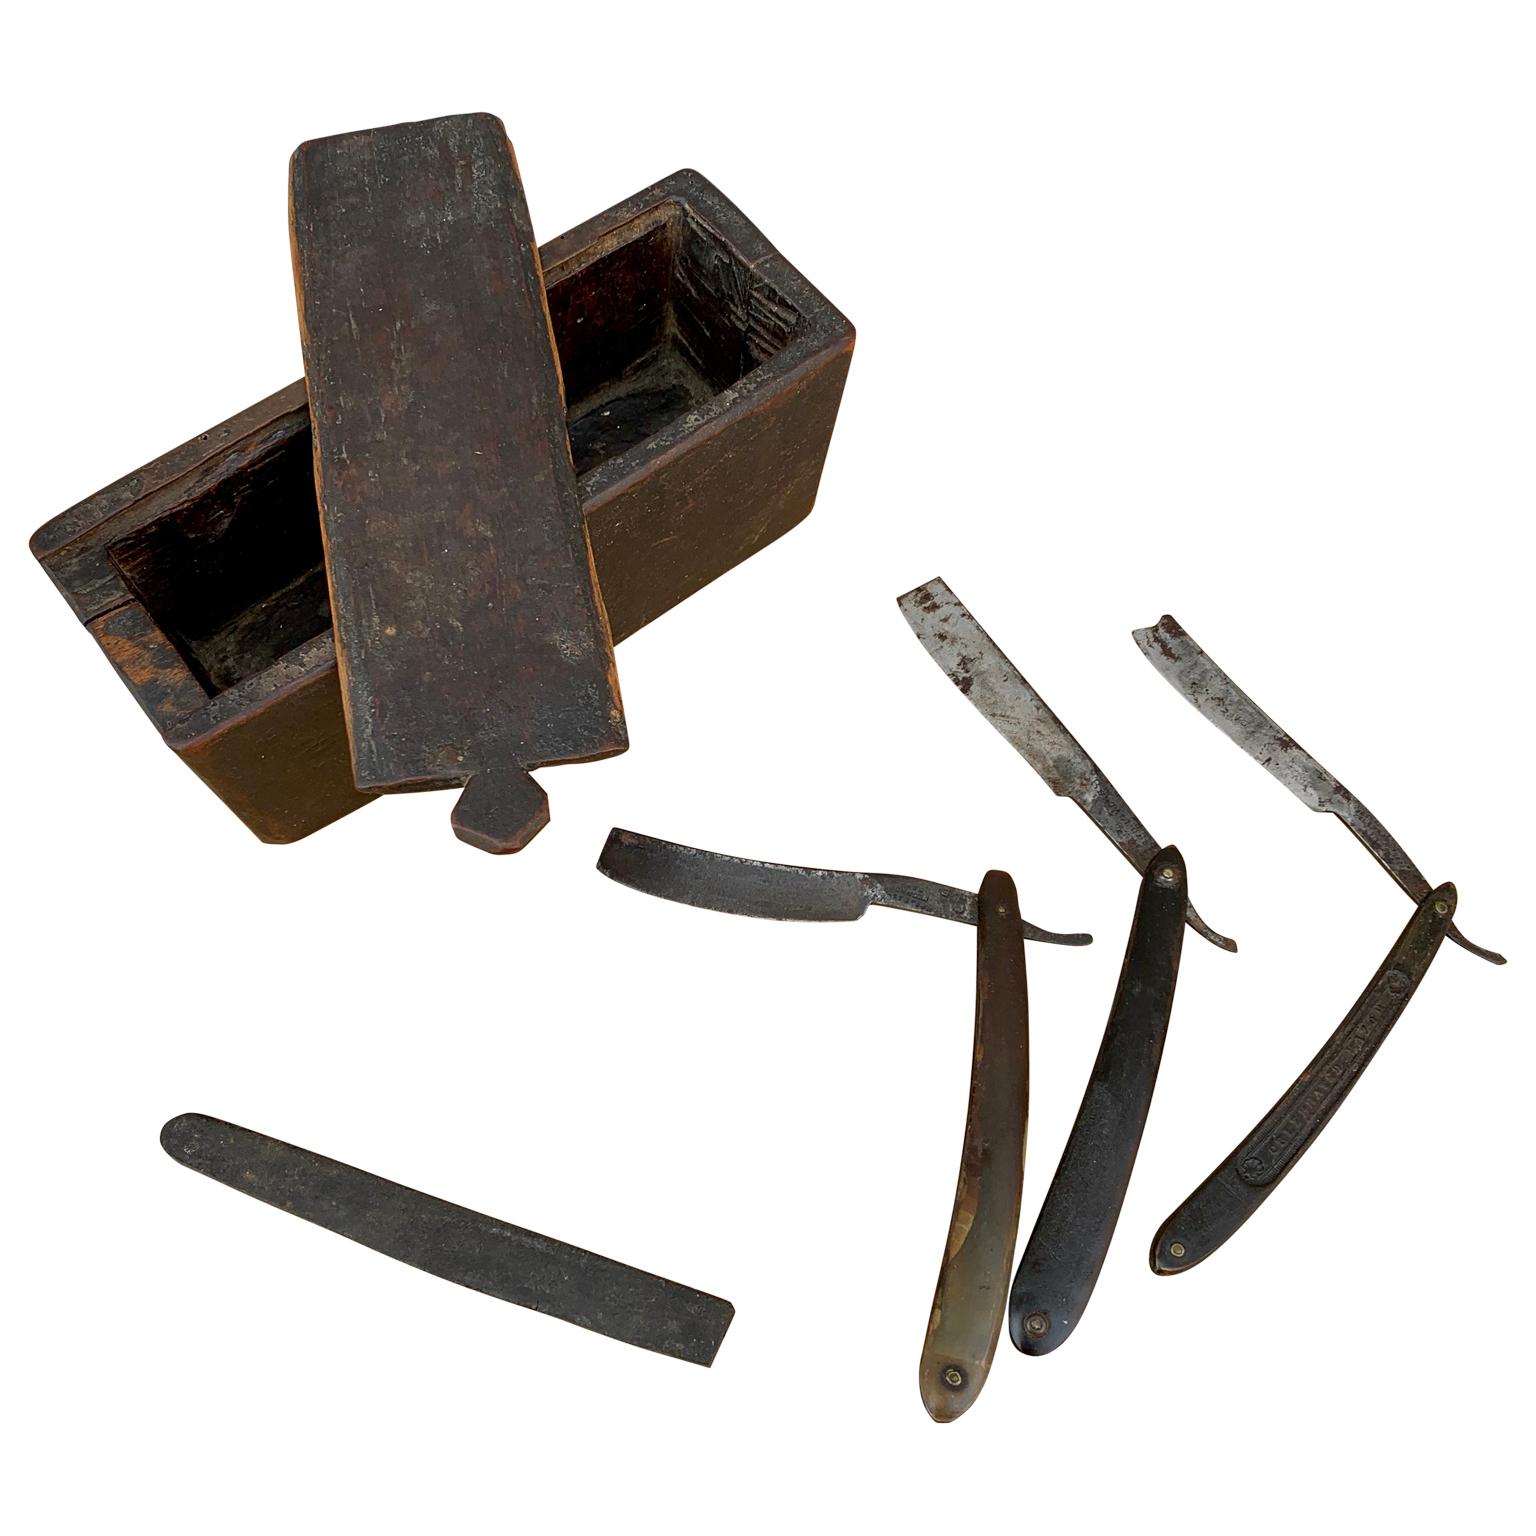 Eine schwedische original bemalte Folk Art Dose. Ab Anfang des 19. Jahrhunderts zur Aufbewahrung von Rasiermessern und ähnlichem Zubehör verwendet. Enthalten 3 Messer mit den Rasierklingen in Englisch Stahl.